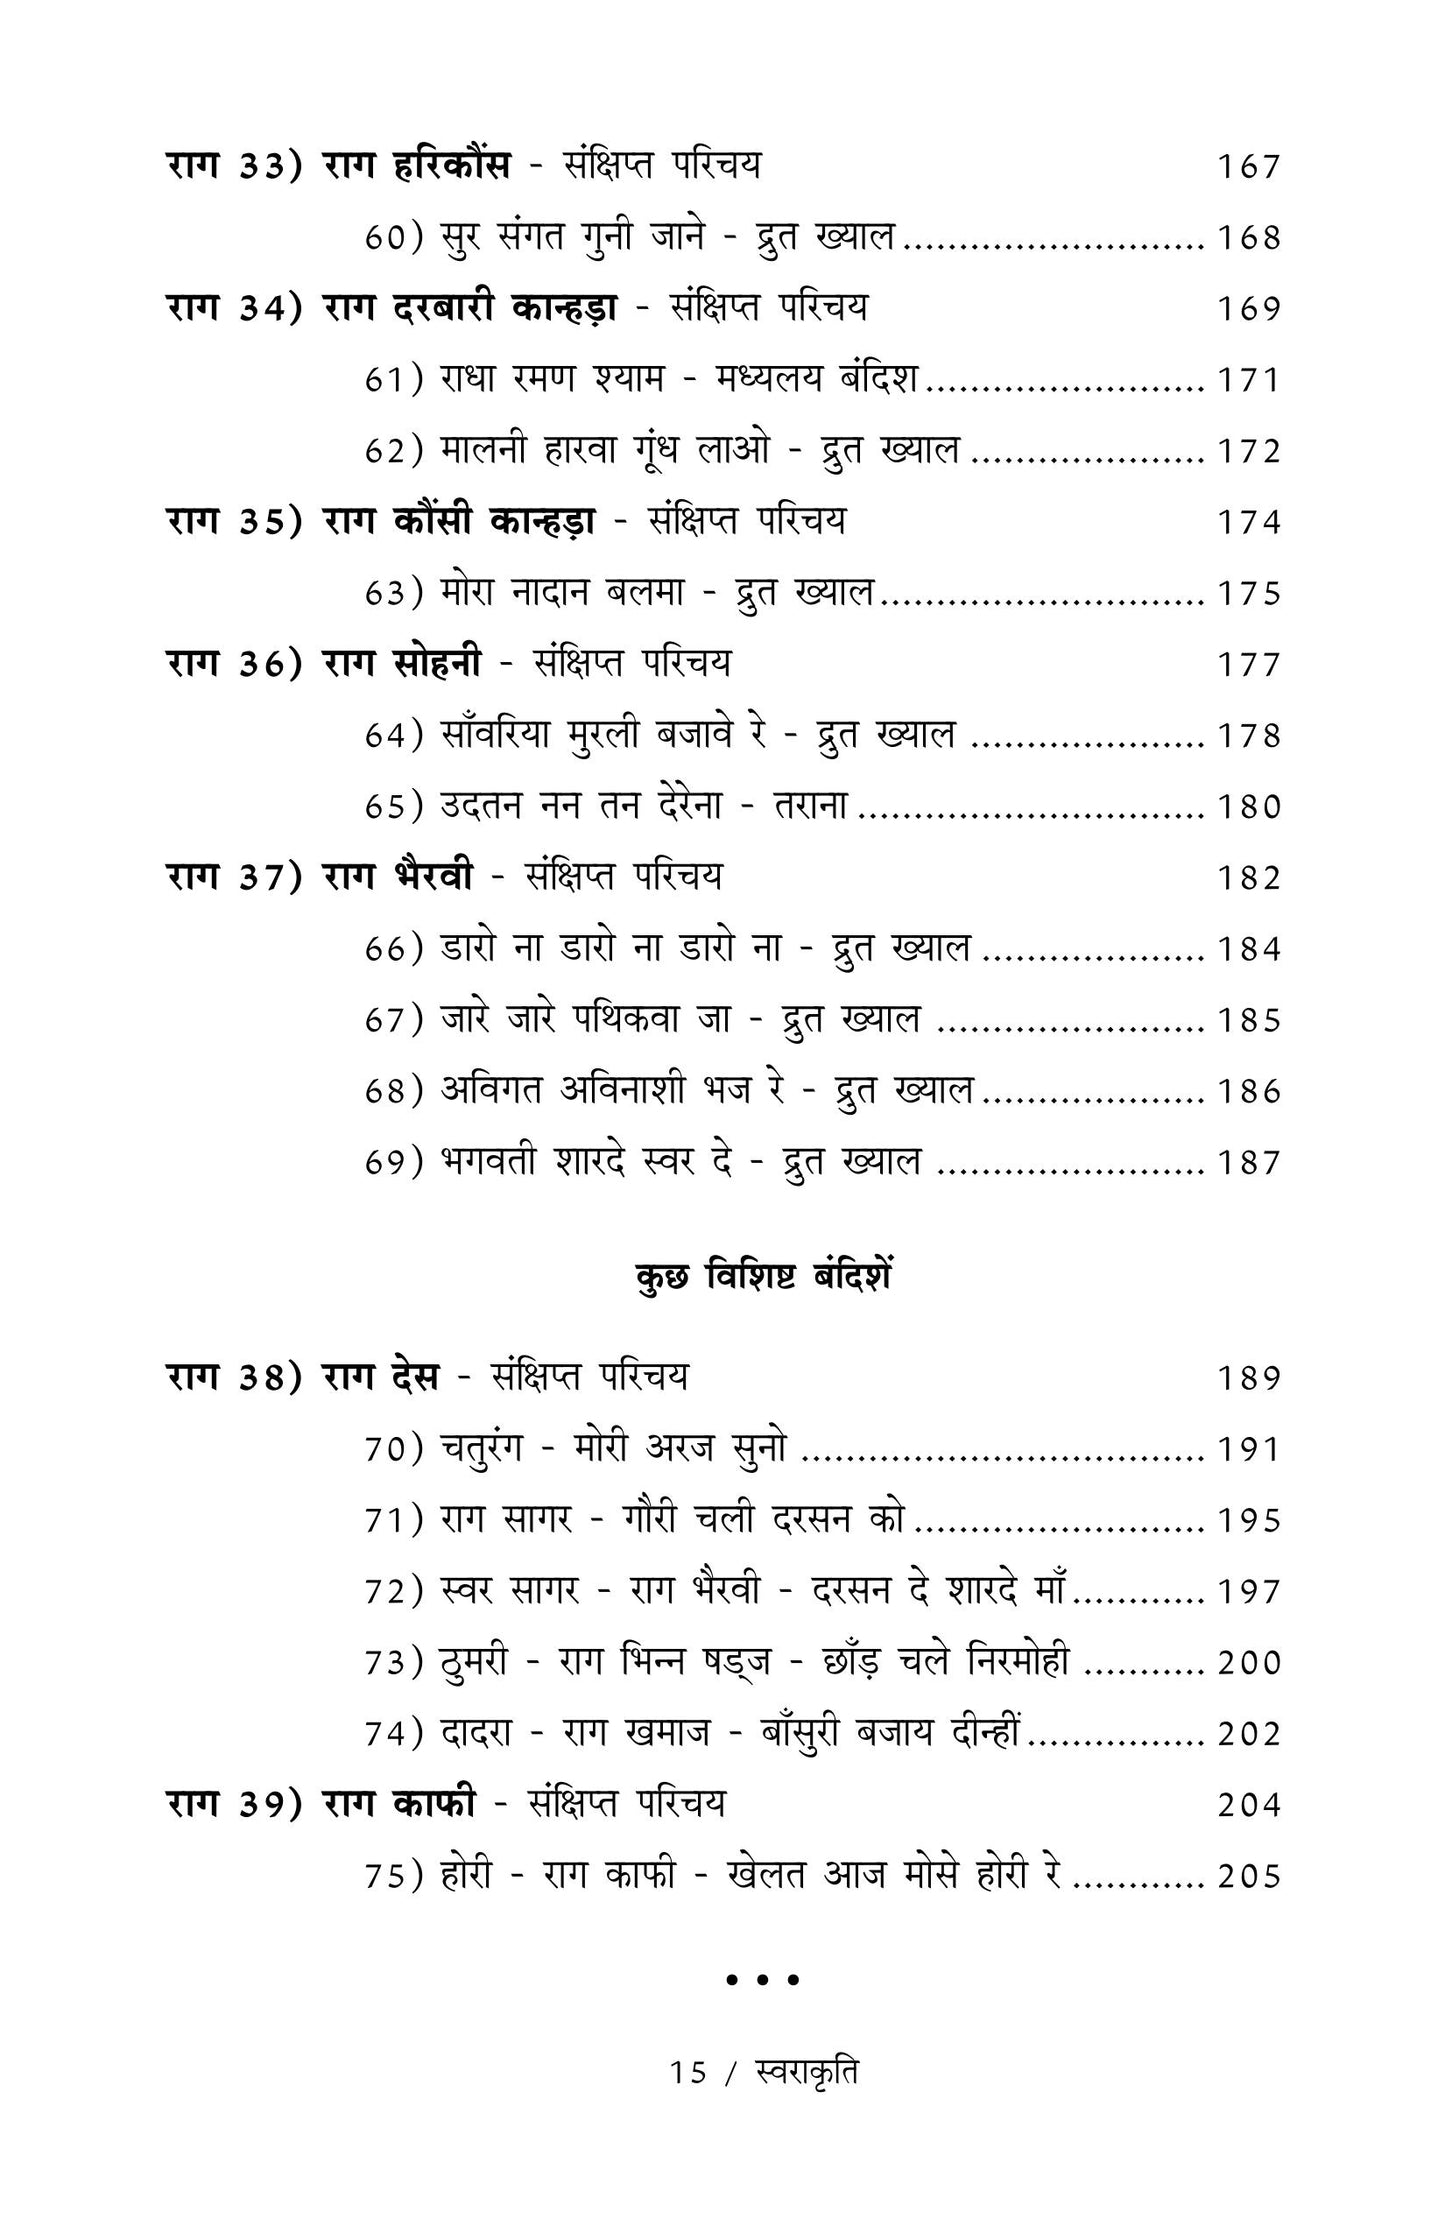 Swarakruti  ('Tanrang' - Bandish Notations)